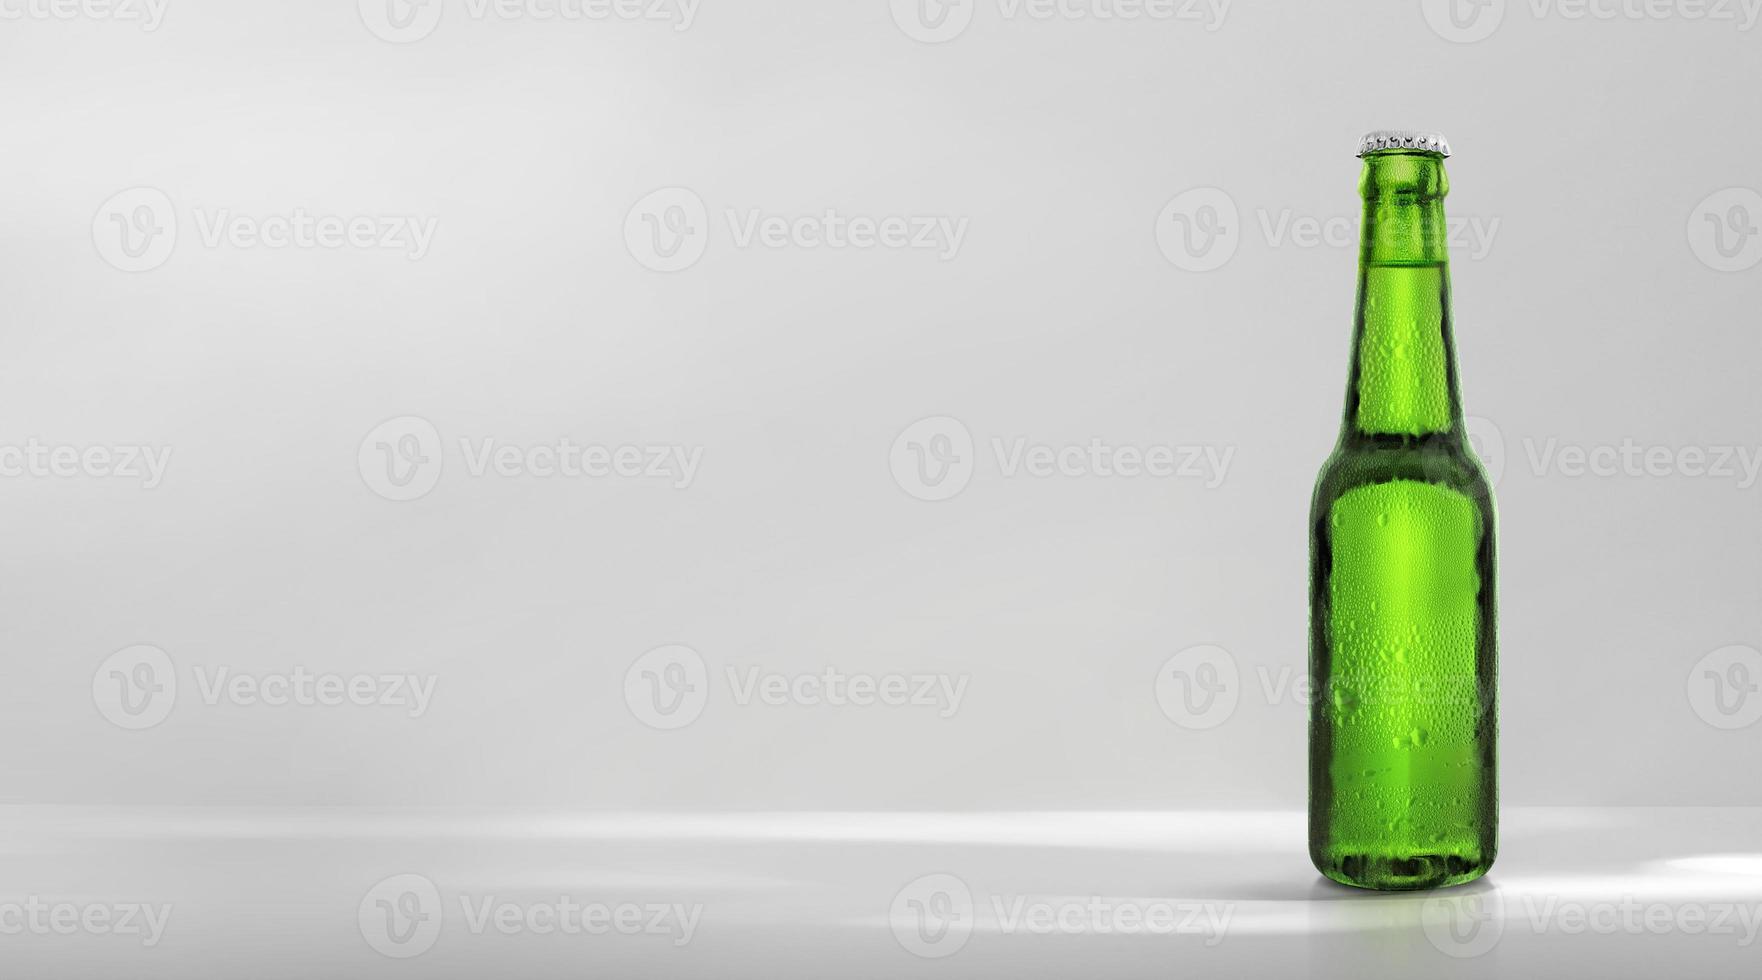 Bouteille de bière verte avec compte-gouttes sur fond blanc photo